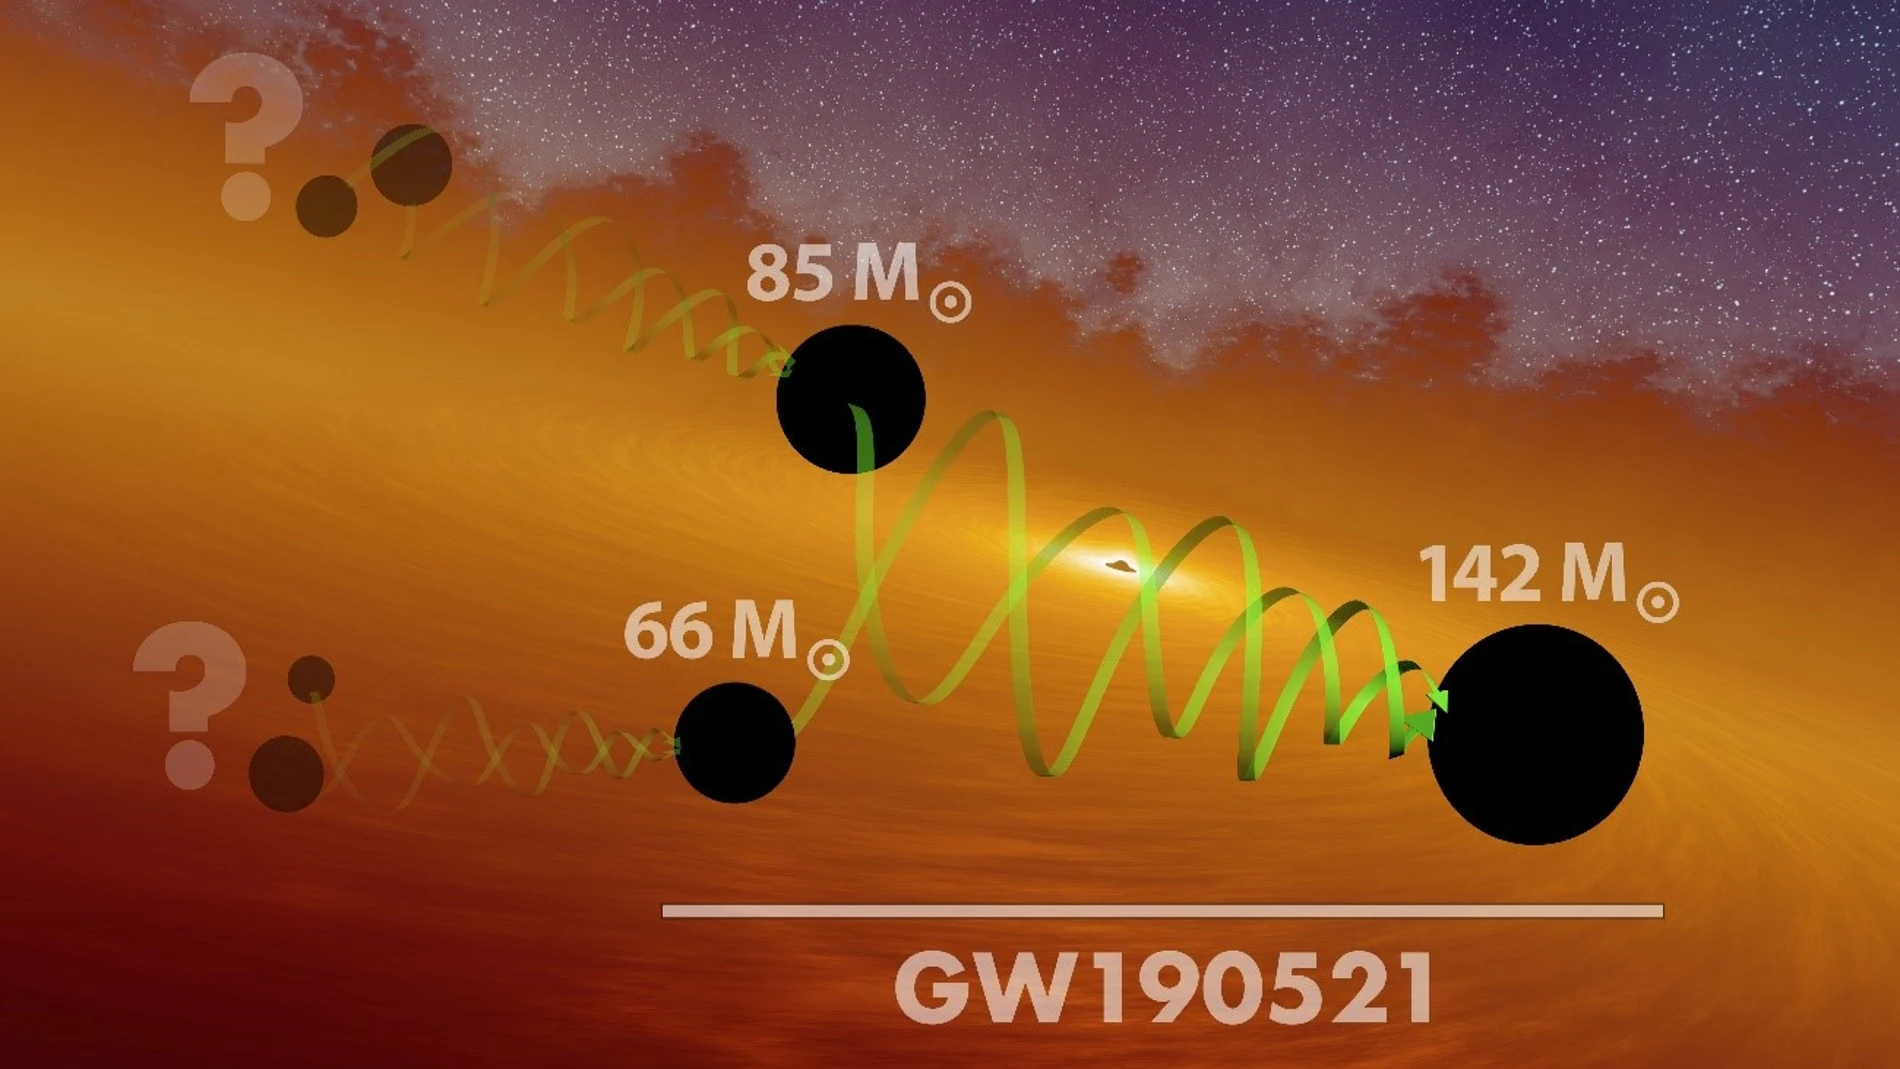 Imagen creada por LIGO-VIRGO para ilustrar el posible origen de los agujeros negros observados en el presente estudio.